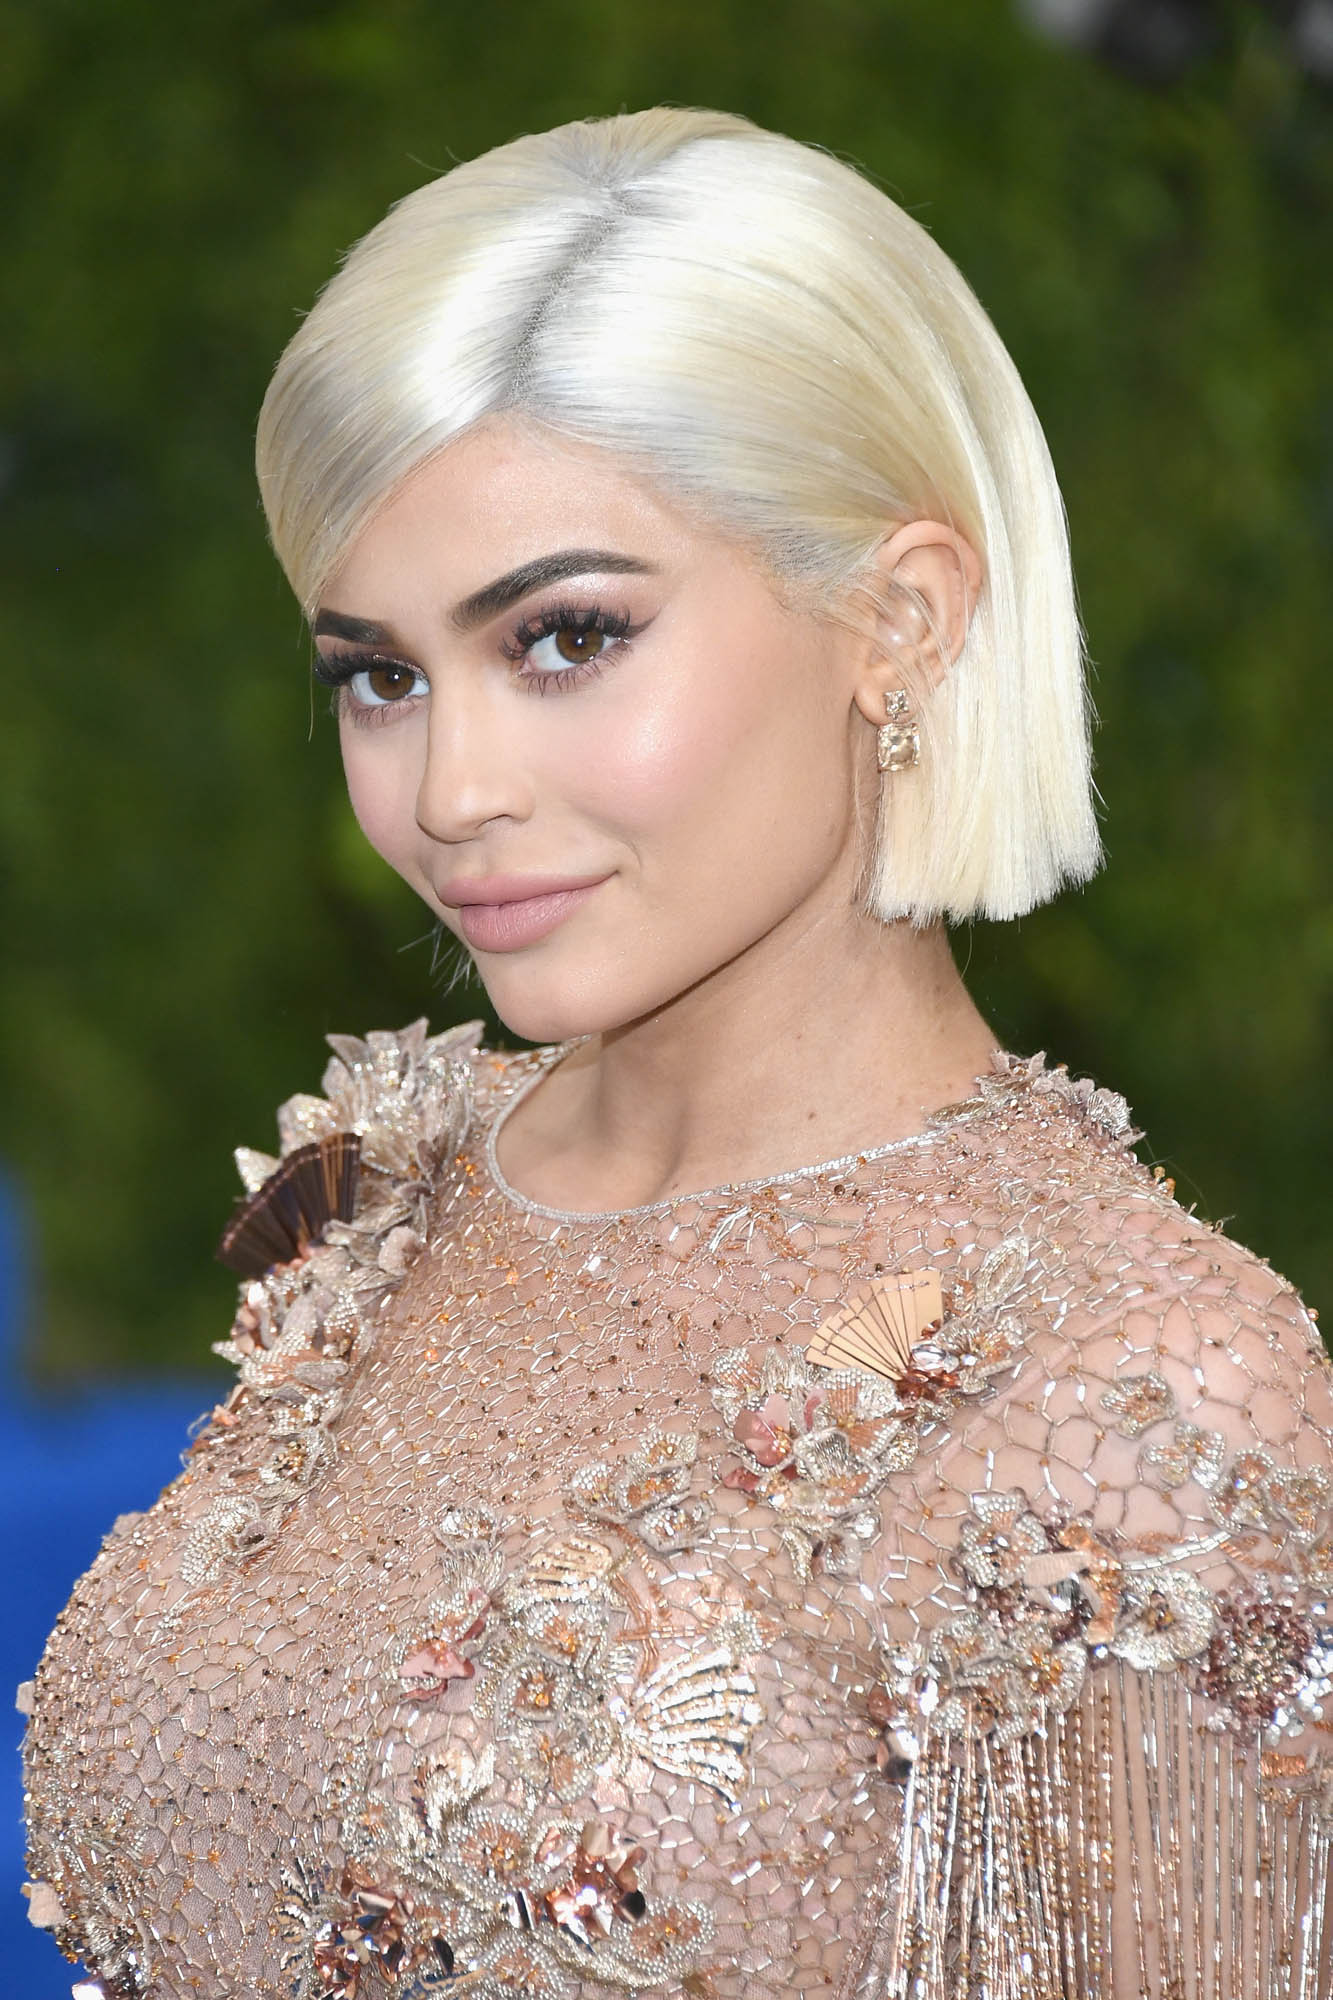 Los cambios de look de las famosas en 2017: Kylie Jenner